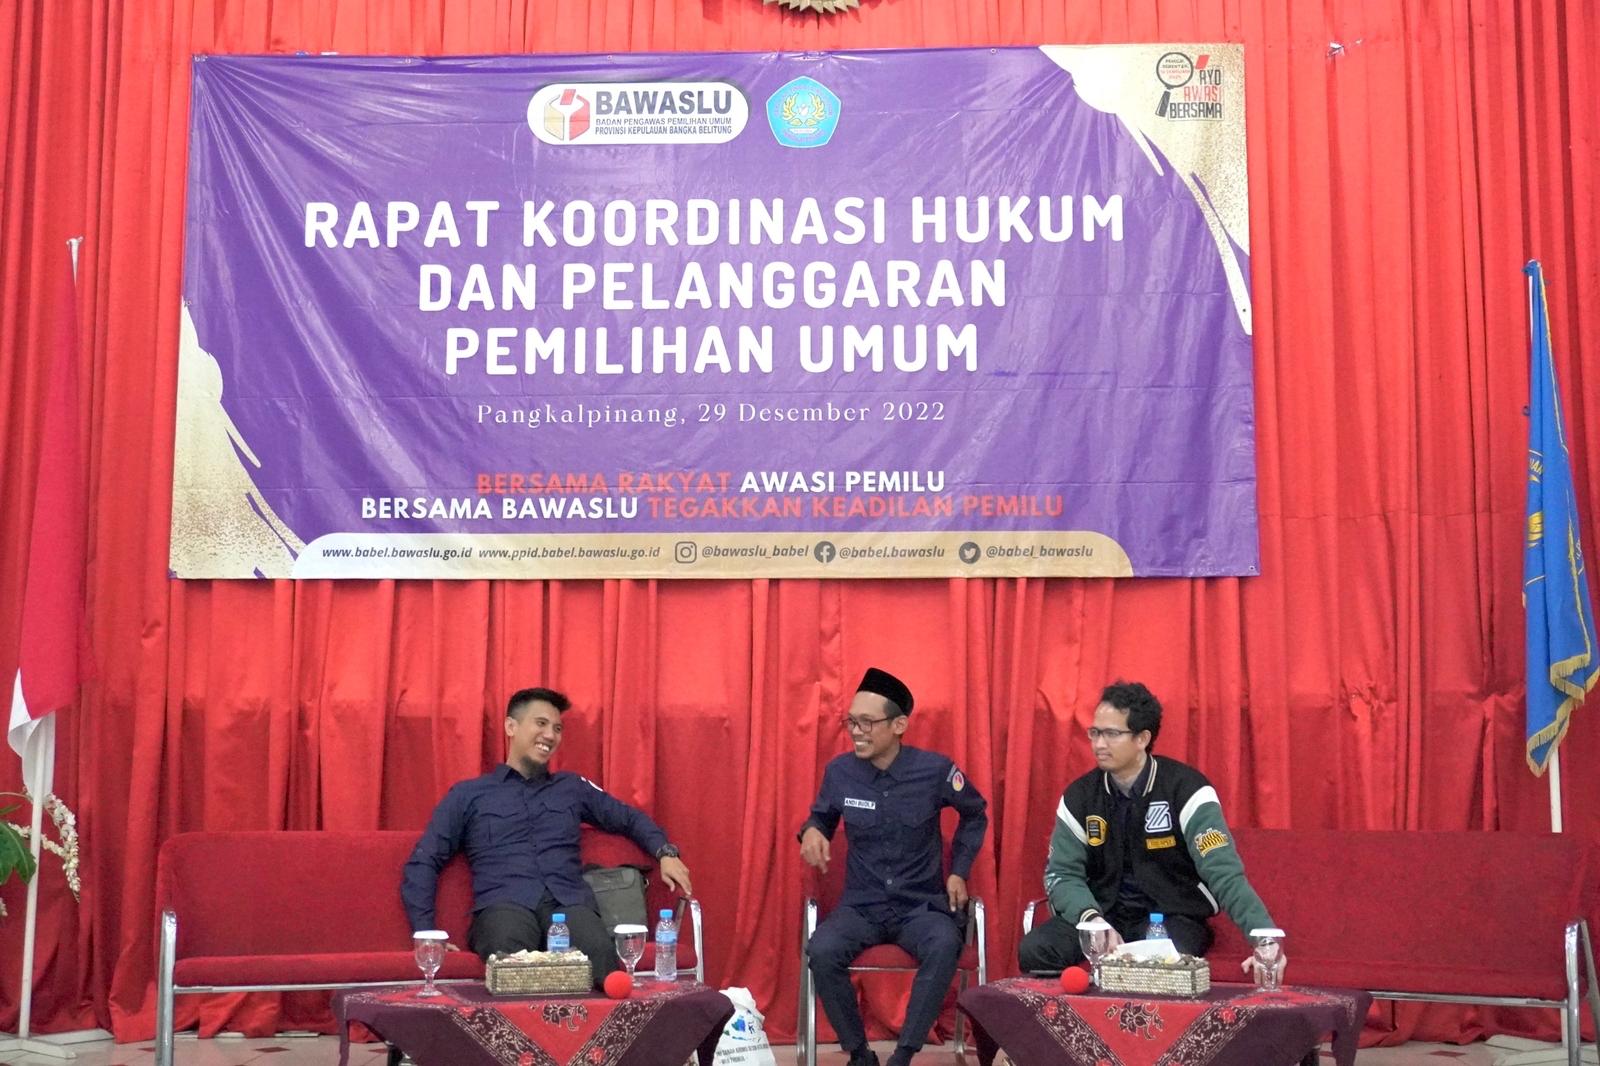 Rapat Koordinasi Hukum dan Pelanggaran Pemilihan Umum oleh BAWASLU Provinsi Kep. Bangka Belitung